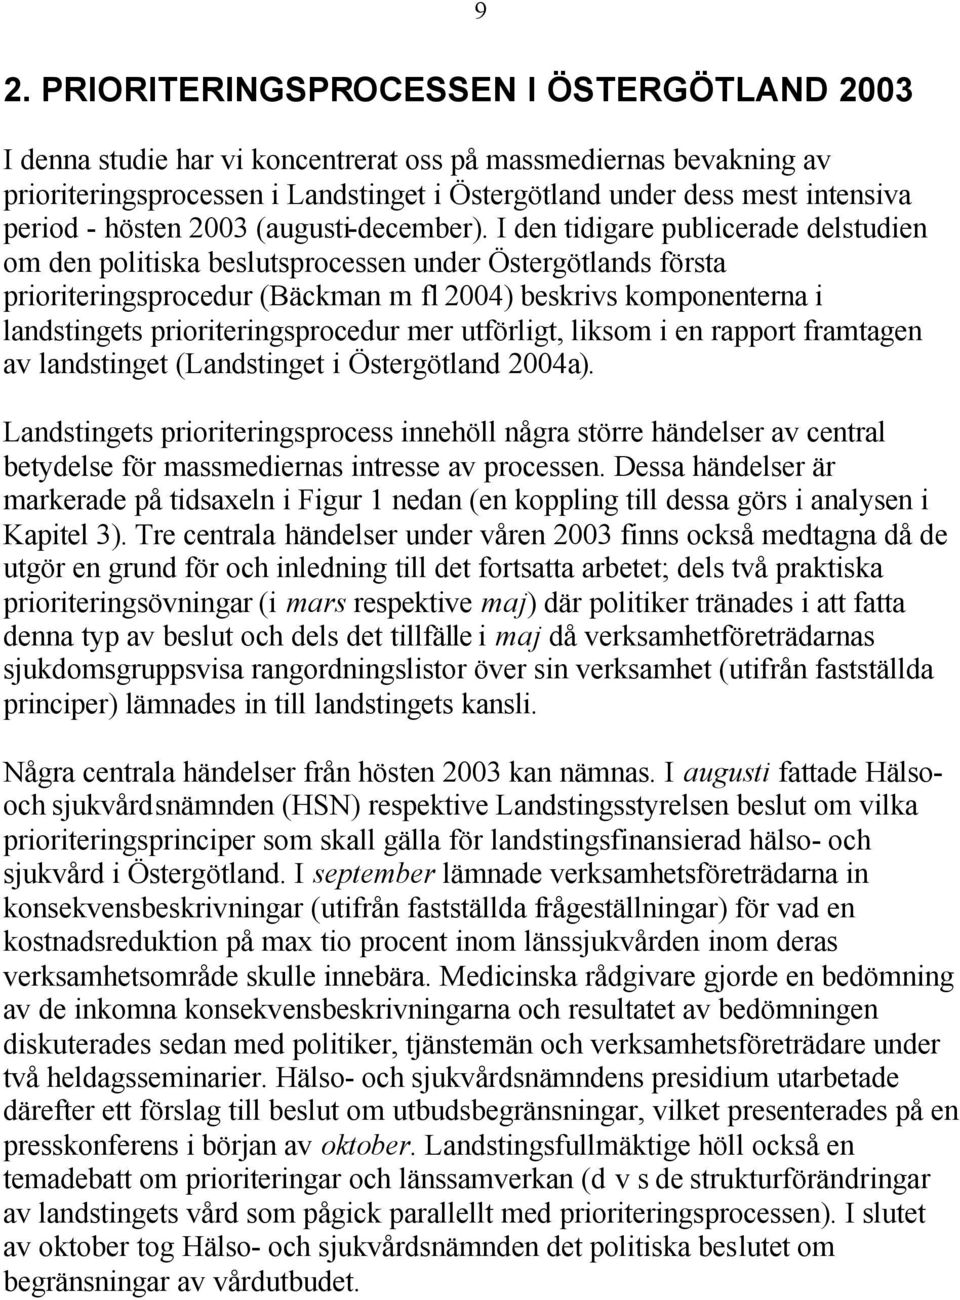 I den tidigare publicerade delstudien om den politiska beslutsprocessen under Östergötlands första prioriteringsprocedur (Bäckman m fl 2004) beskrivs komponenterna i landstingets